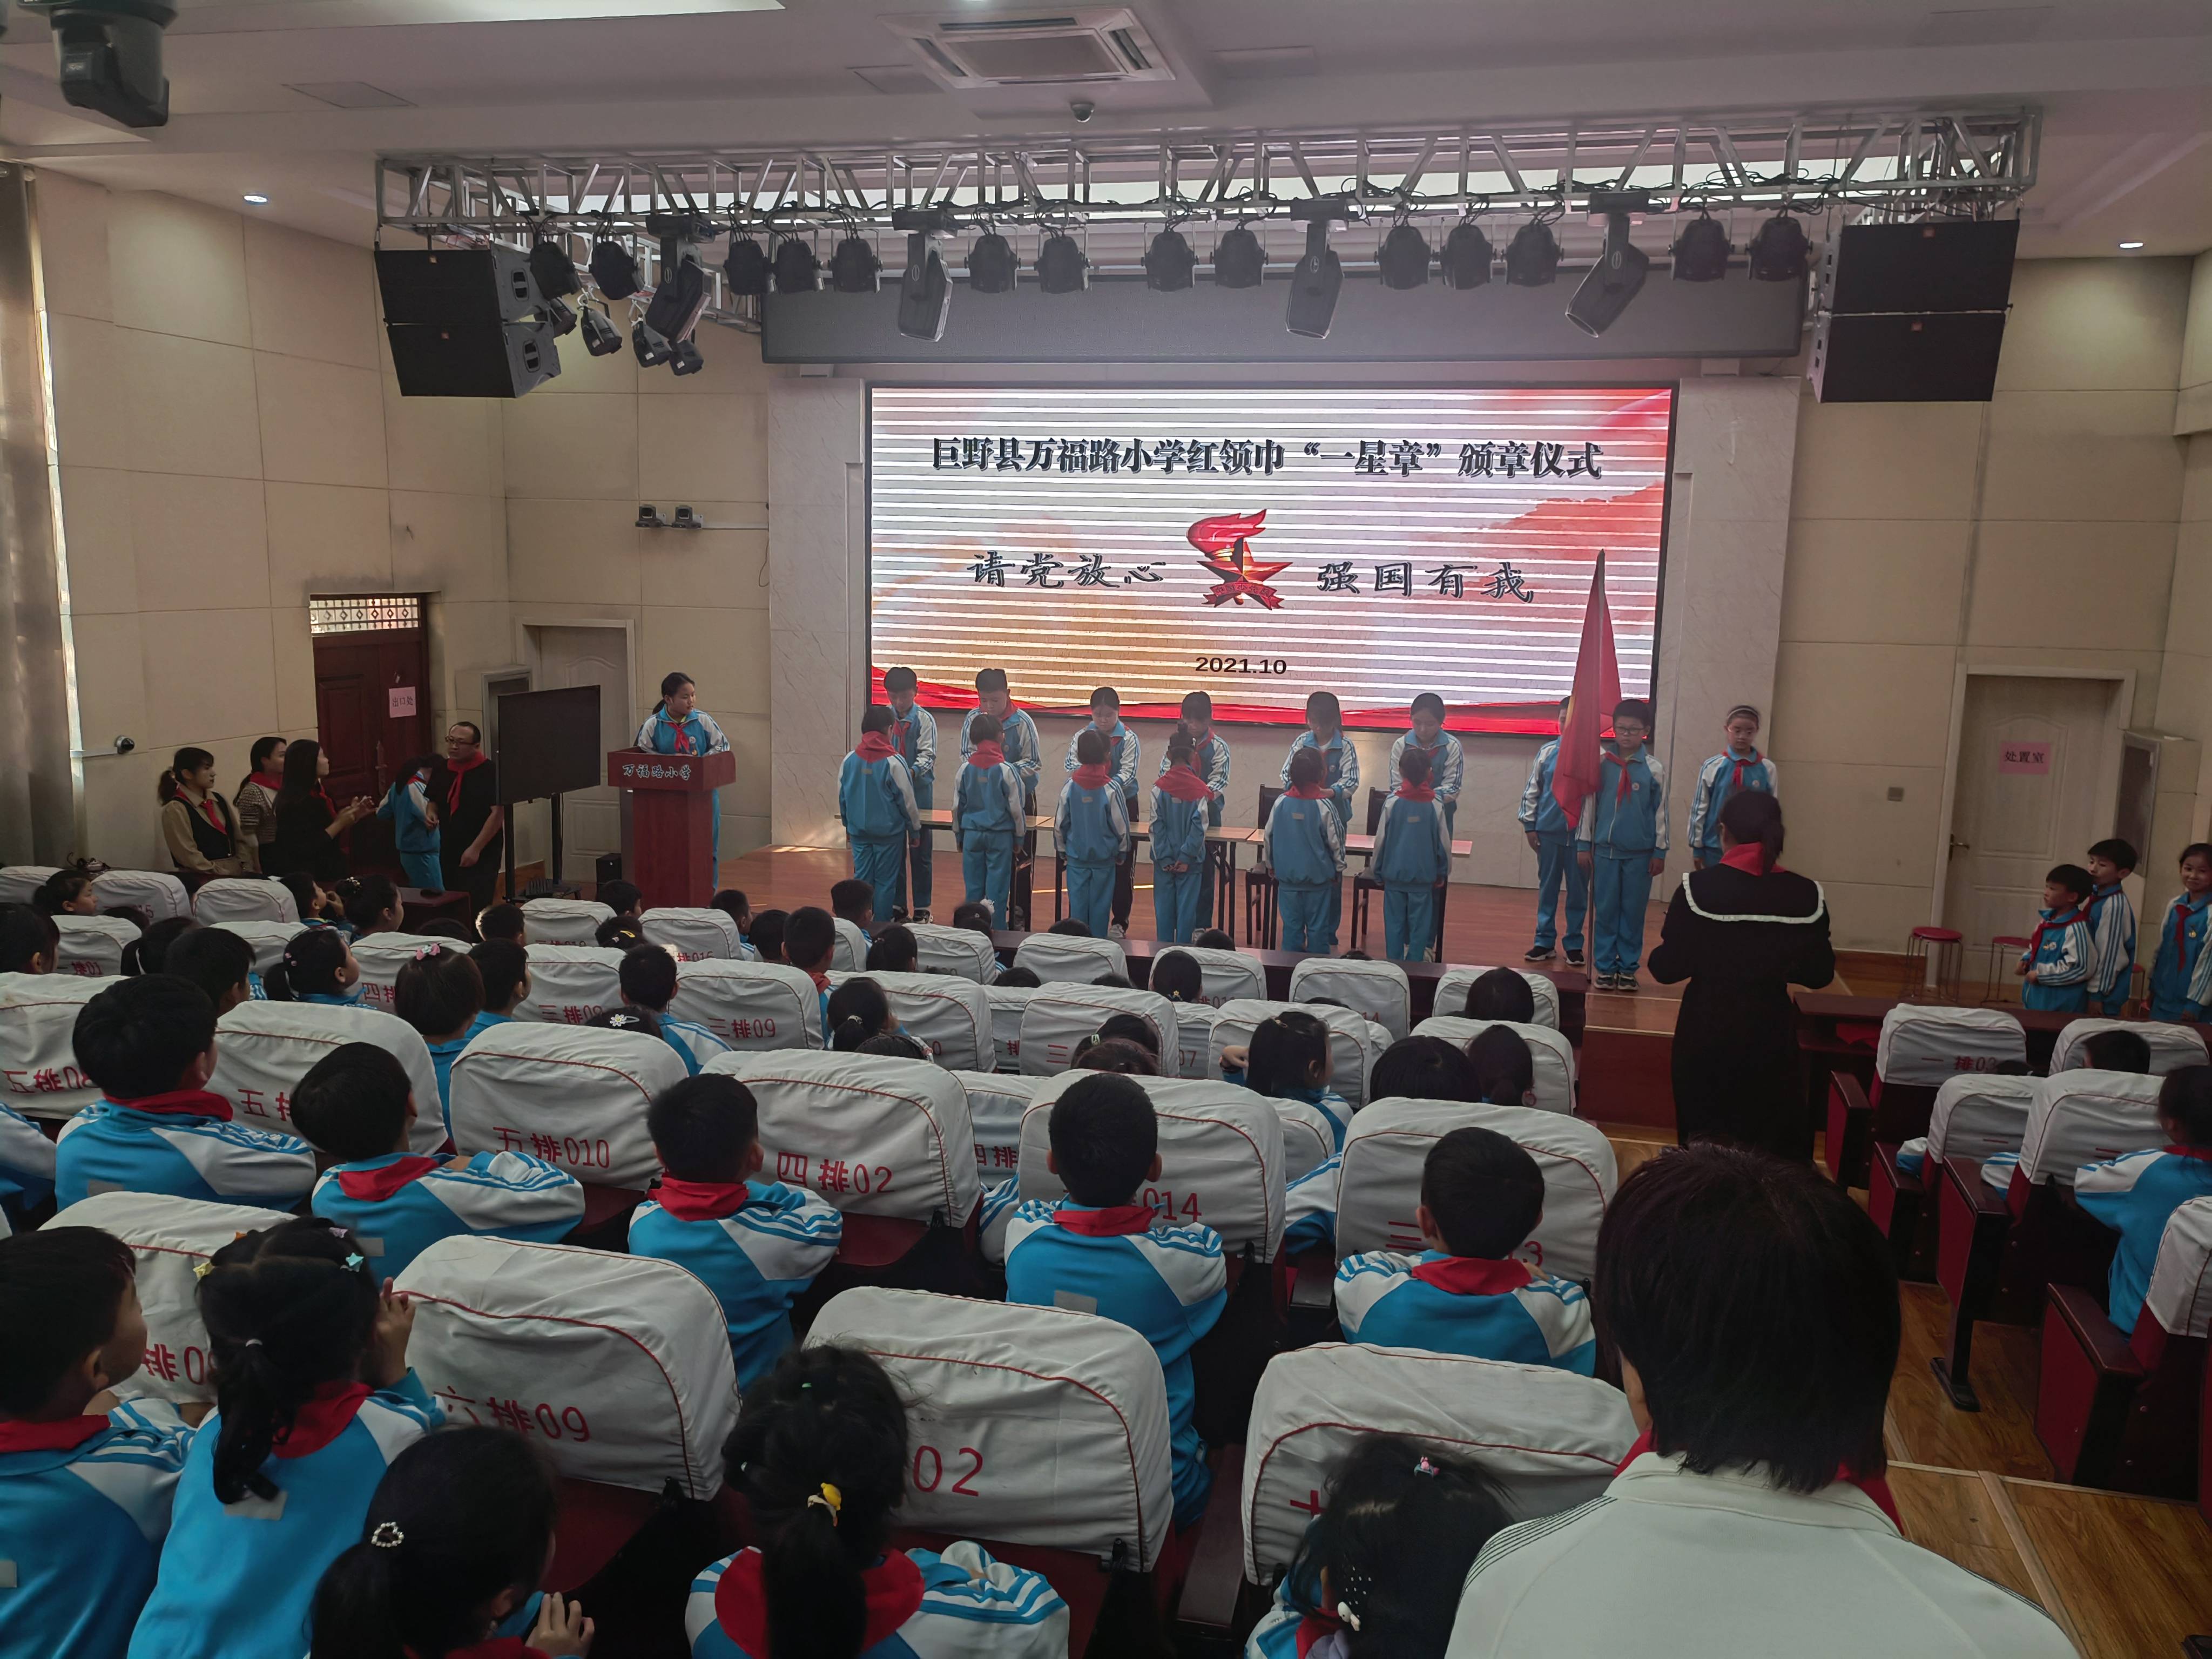 巨野县万福路小学 举行红领巾一星章颁章暨第二批少先队员入队仪式